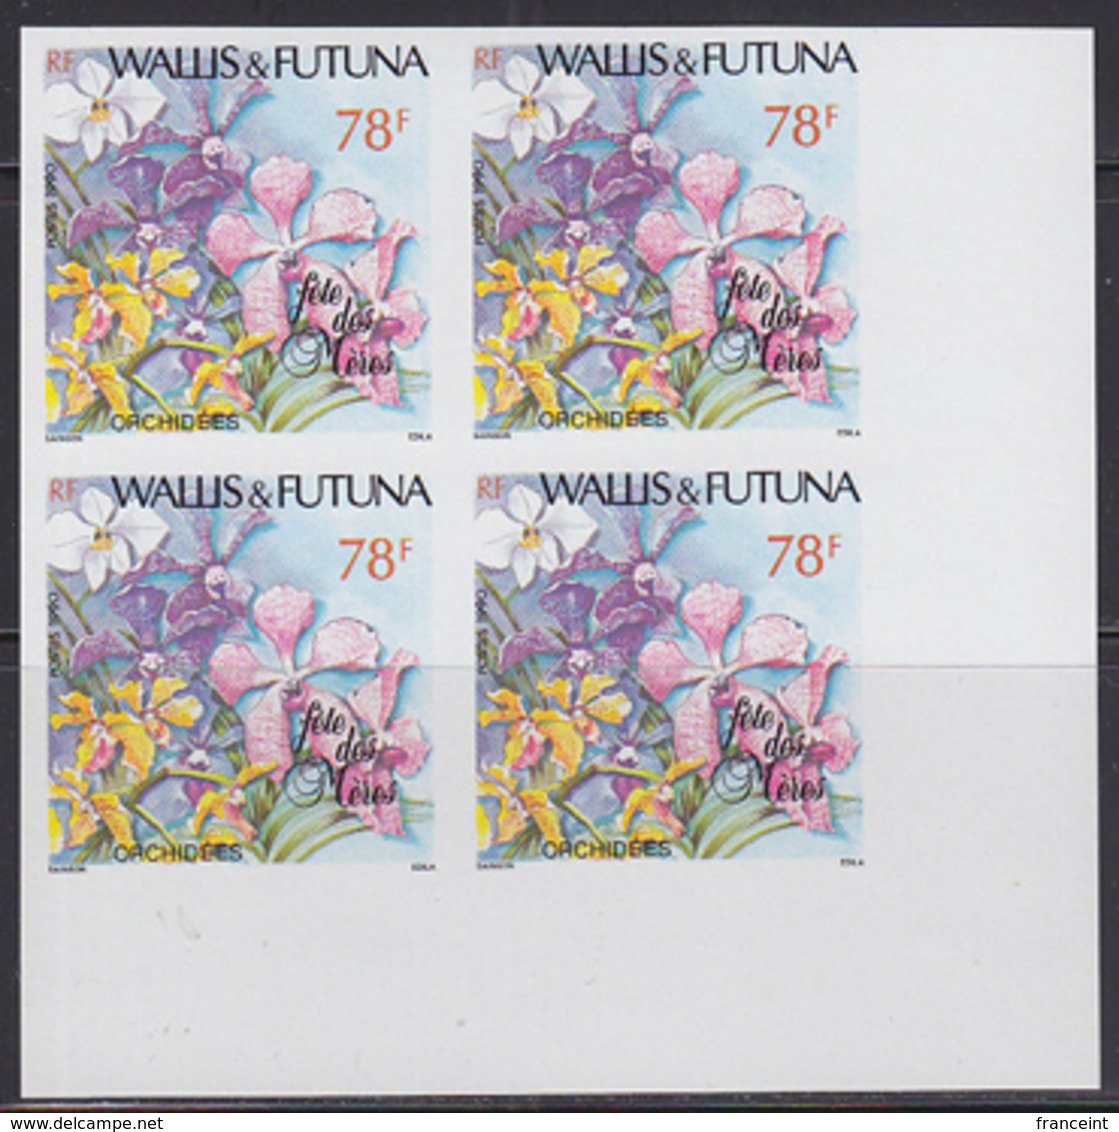 WALLIS & FUTUNA (1990) Orchids. Imperforate Corner Block Of 4. Scott No 392, Yvert No 397. - Sin Dentar, Pruebas De Impresión Y Variedades